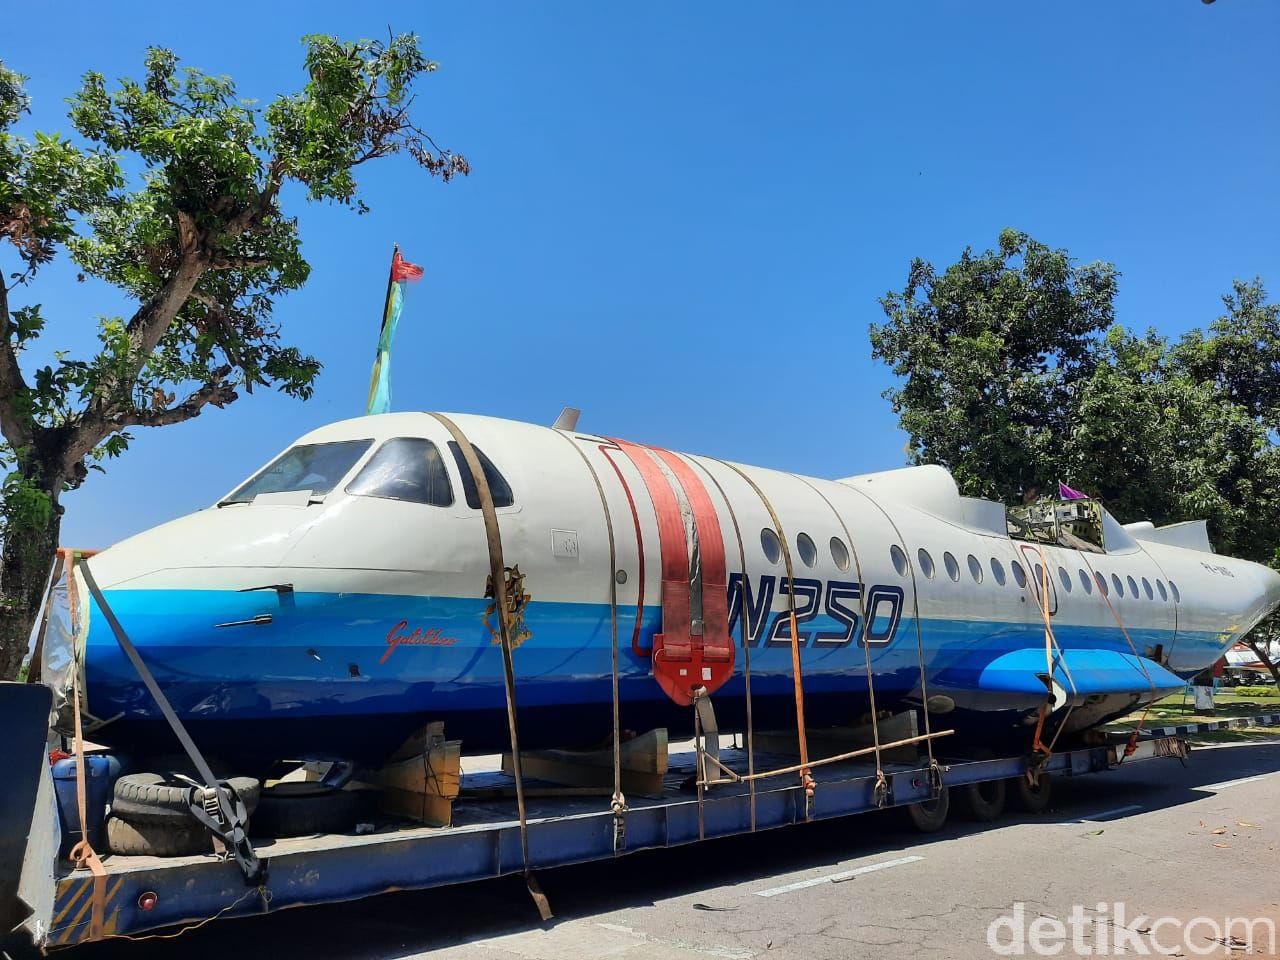 Pesawat N250 Gatotkaca karya Habibie tiba di Museum Dirgantara TNI AU Yogyakarta